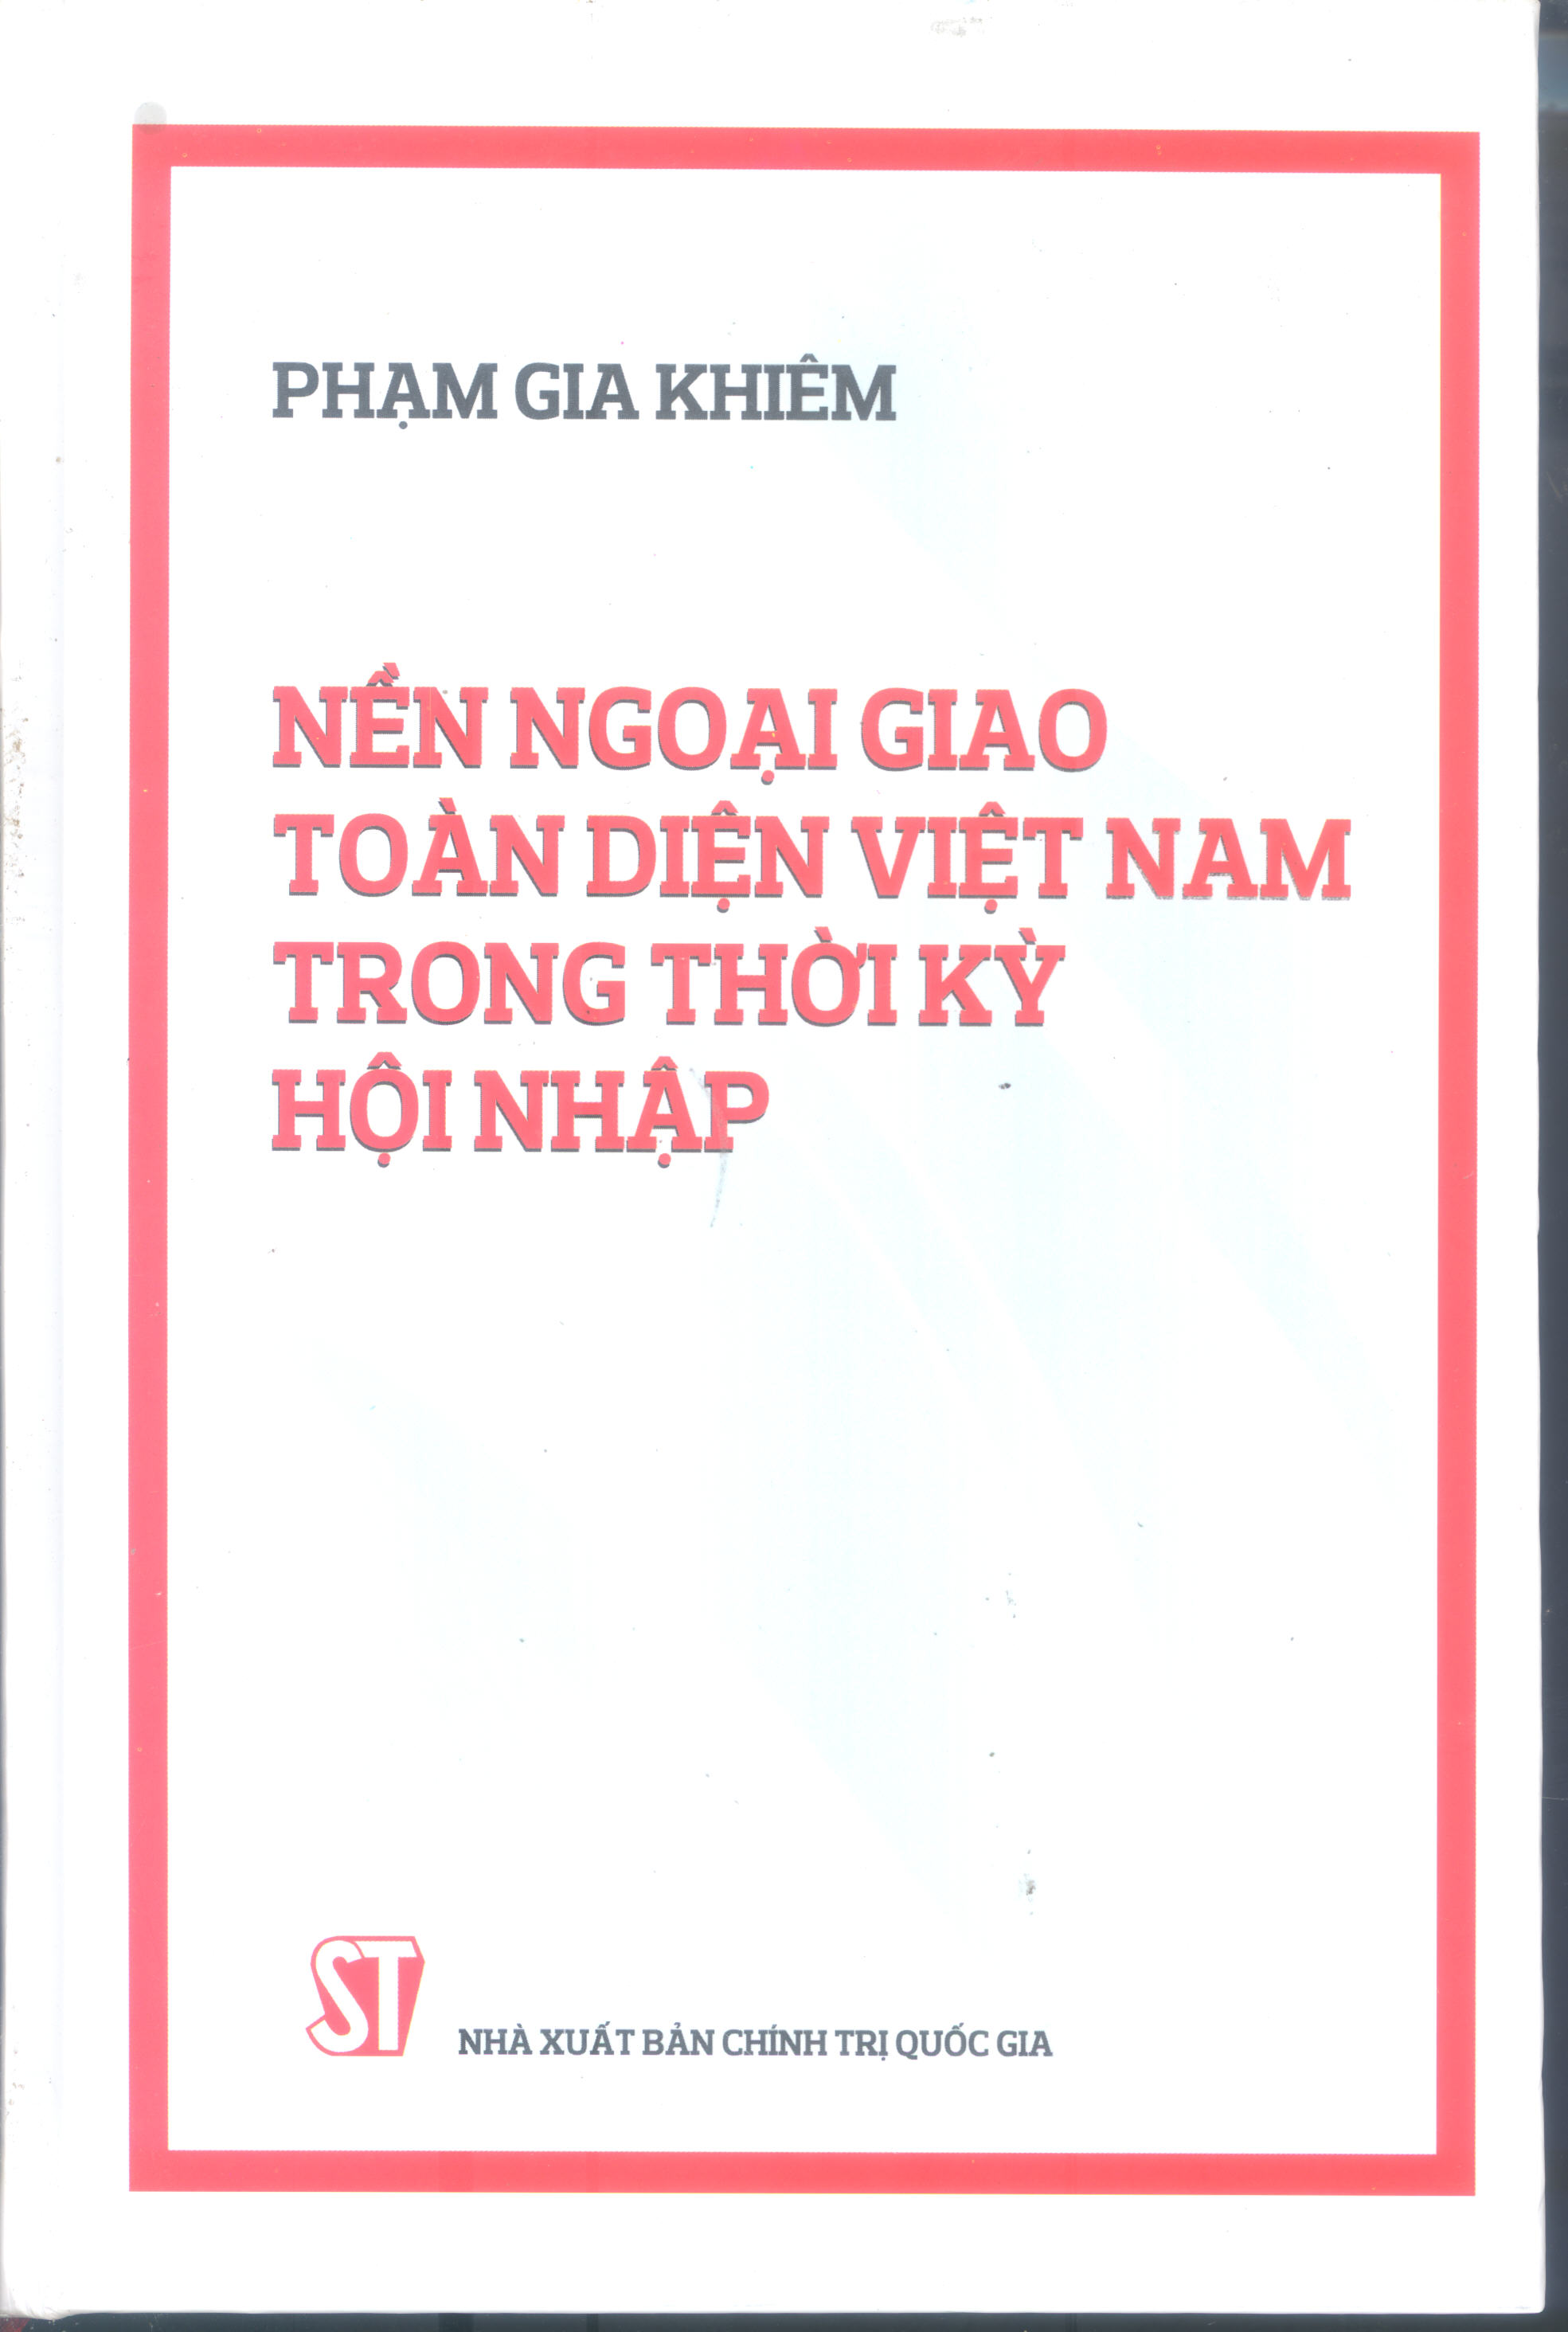 Nền ngoại giao toàn diện Việt Nam trong thời kỳ hội nhập